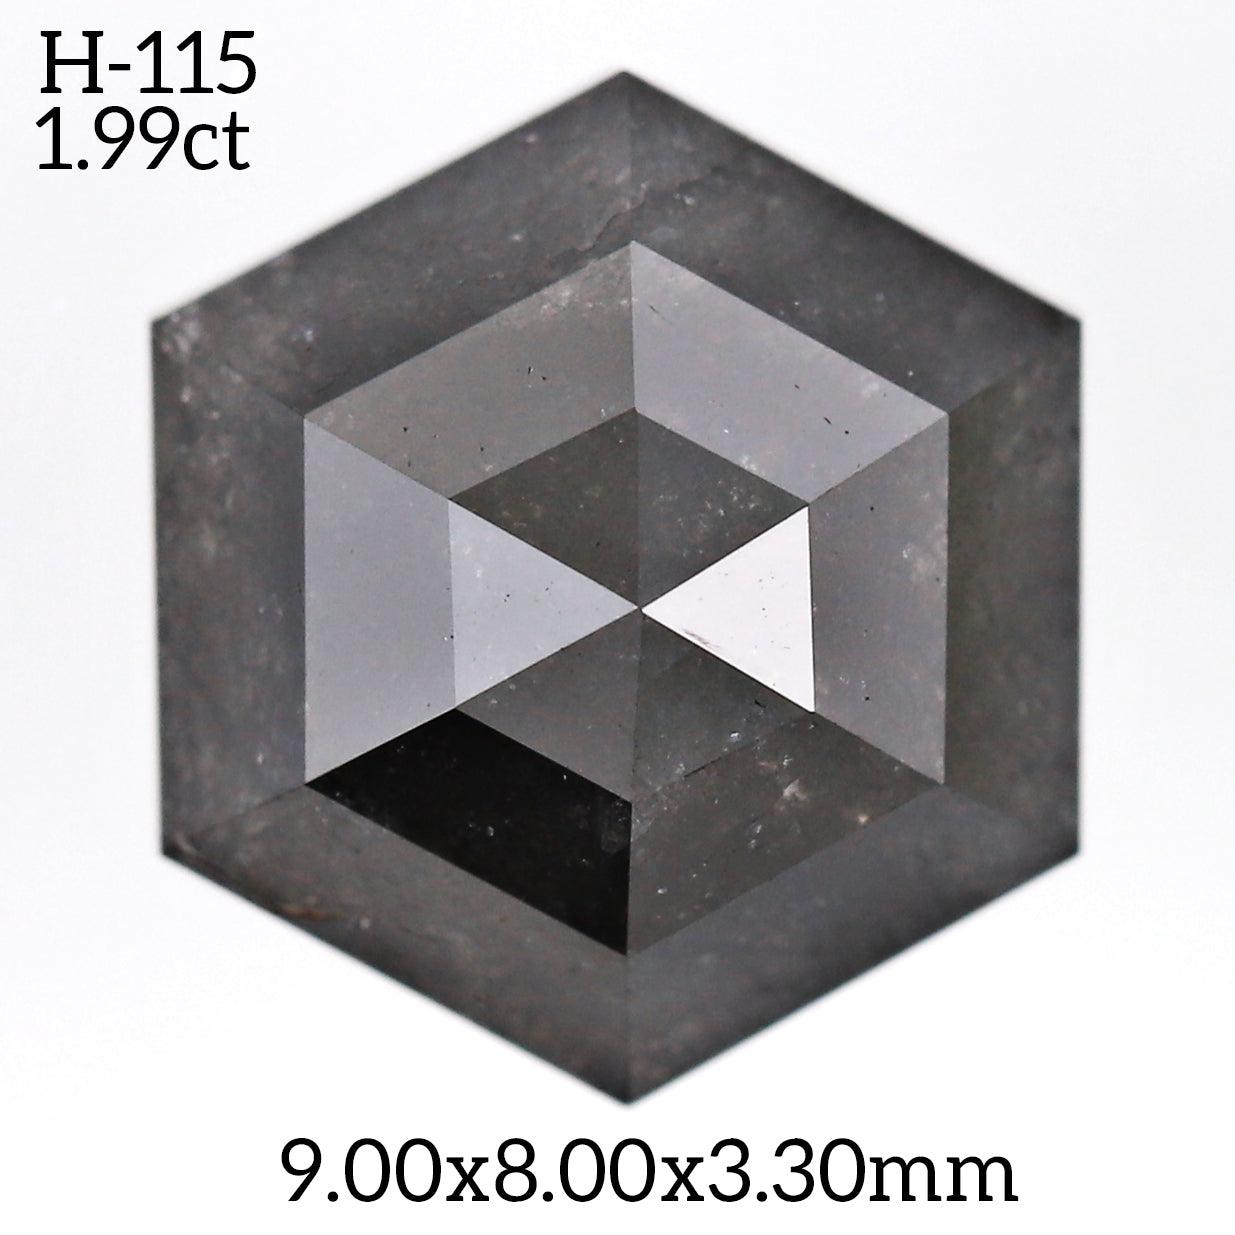 H115 - Salt and pepper hexagon diamond